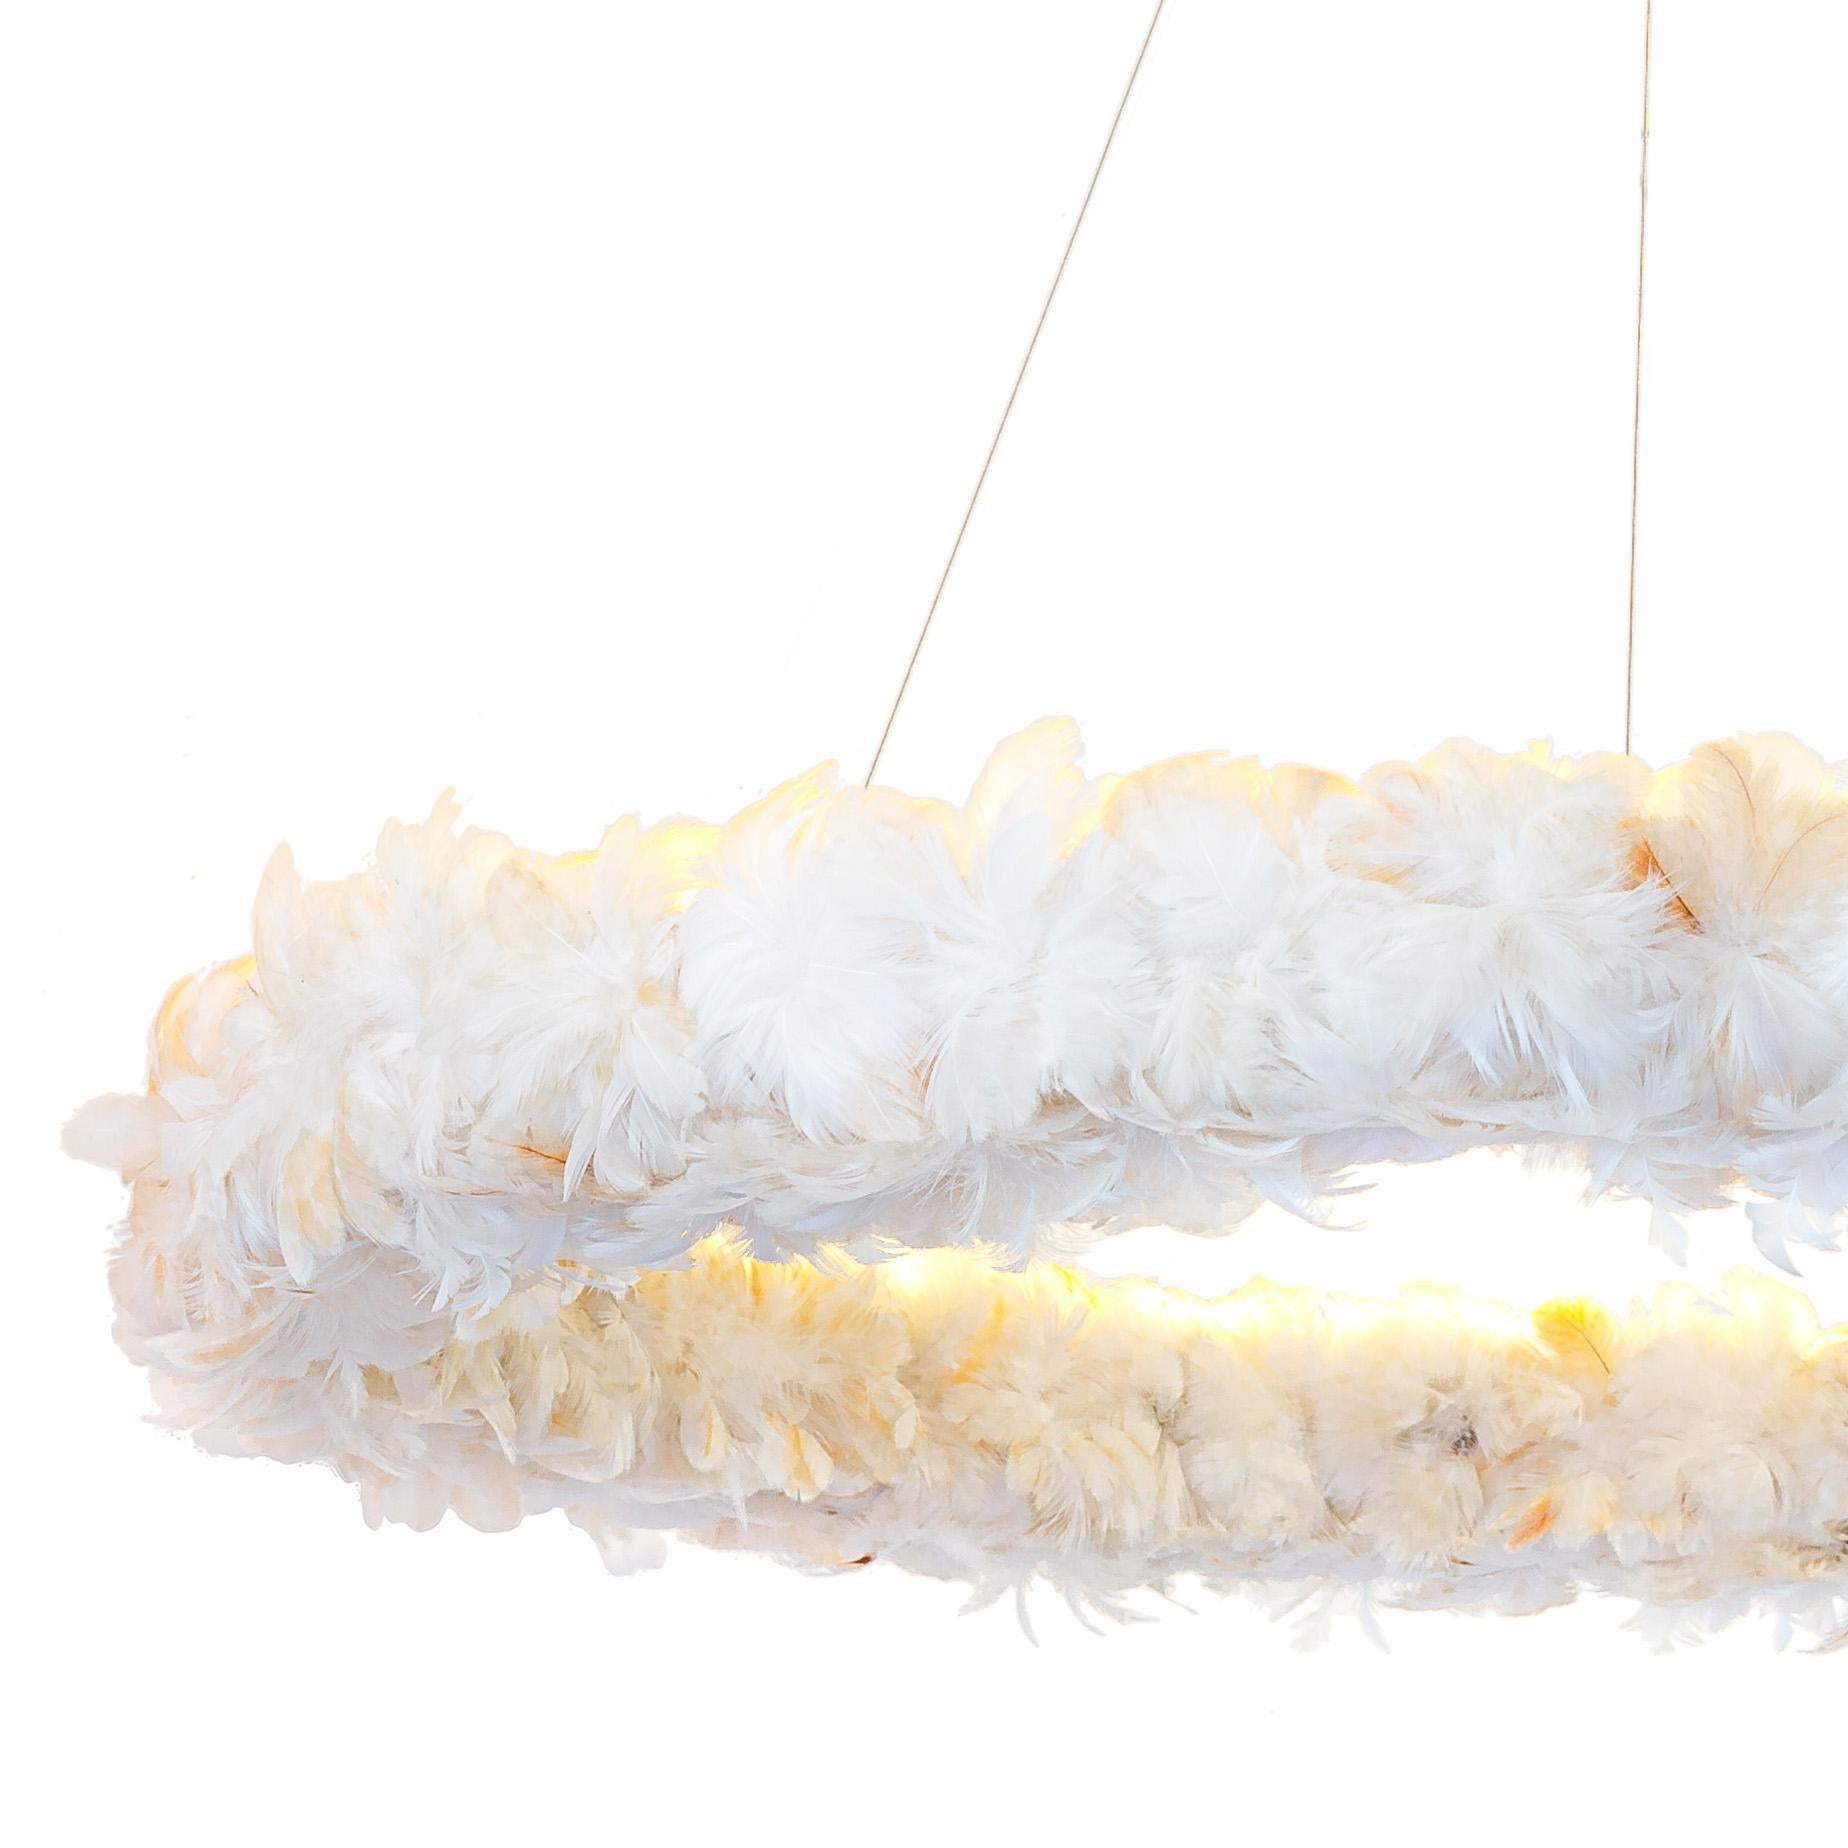 Luminaire à lumière indirecte en bois de peroba recyclé avec des fleurs de plumes entrelacées, offrant un éclairage doux. Suspendu par des câbles d'acier, le Luminaire flotte délicatement dans l'air. 

Inspiré des bandeaux de plumes